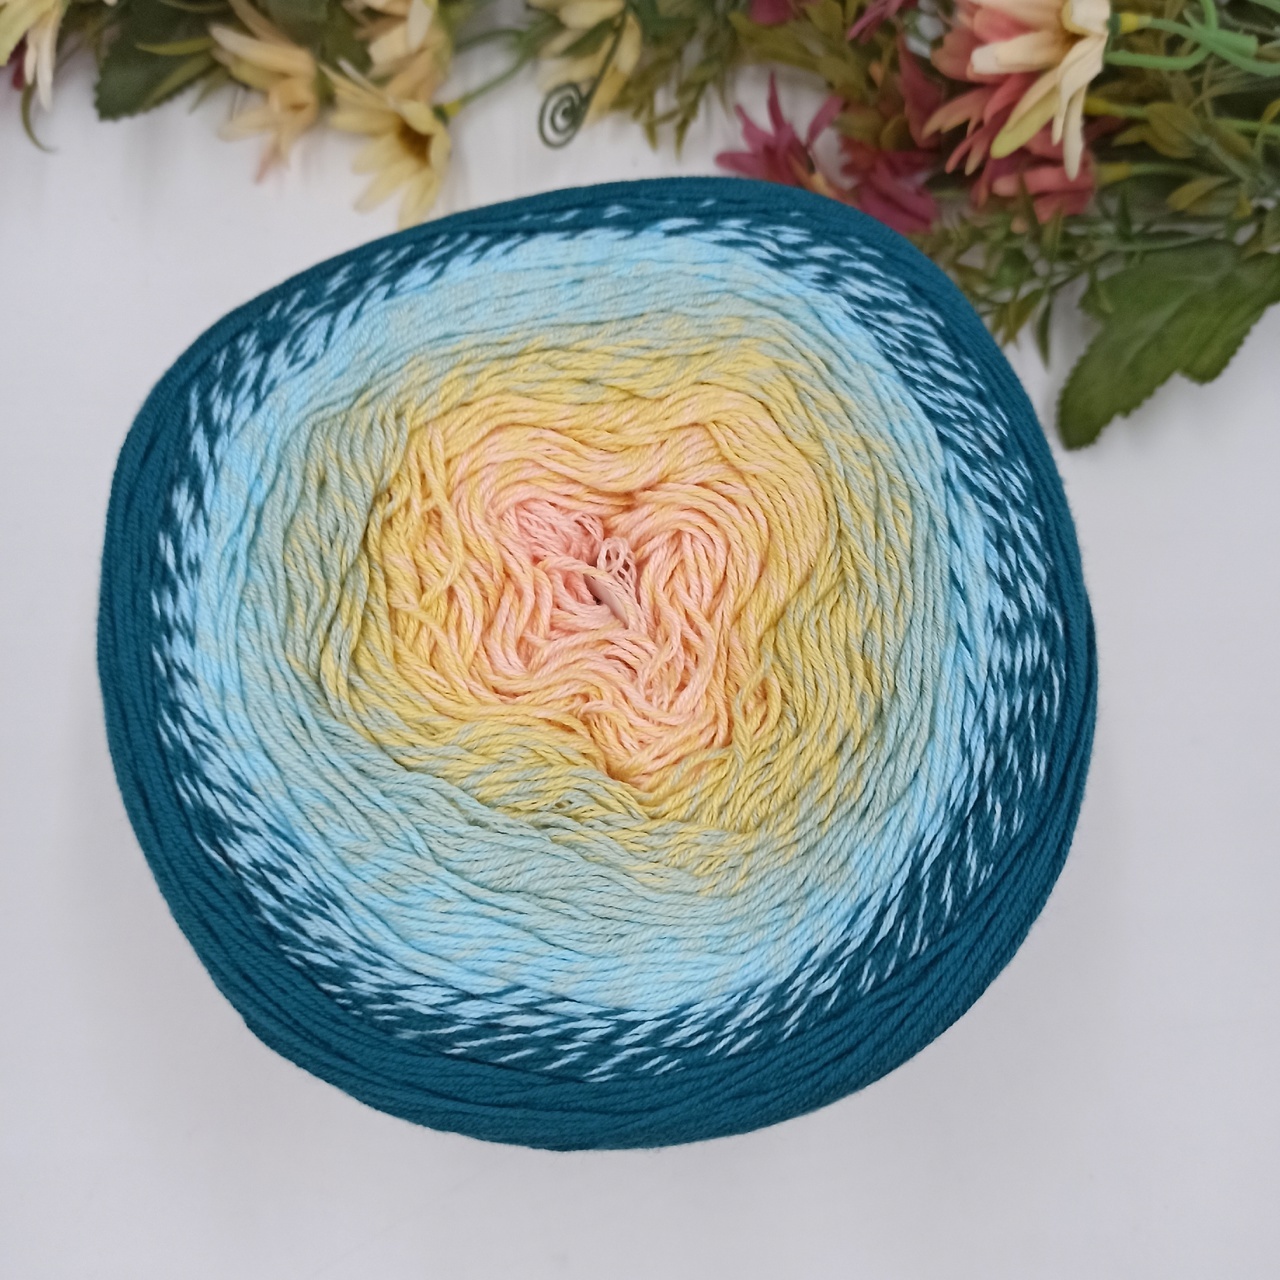 Хлопок секционного окрашивания  Flowers Yarn art 270, Турция Морской-Голубой-Светло желтый-Персик